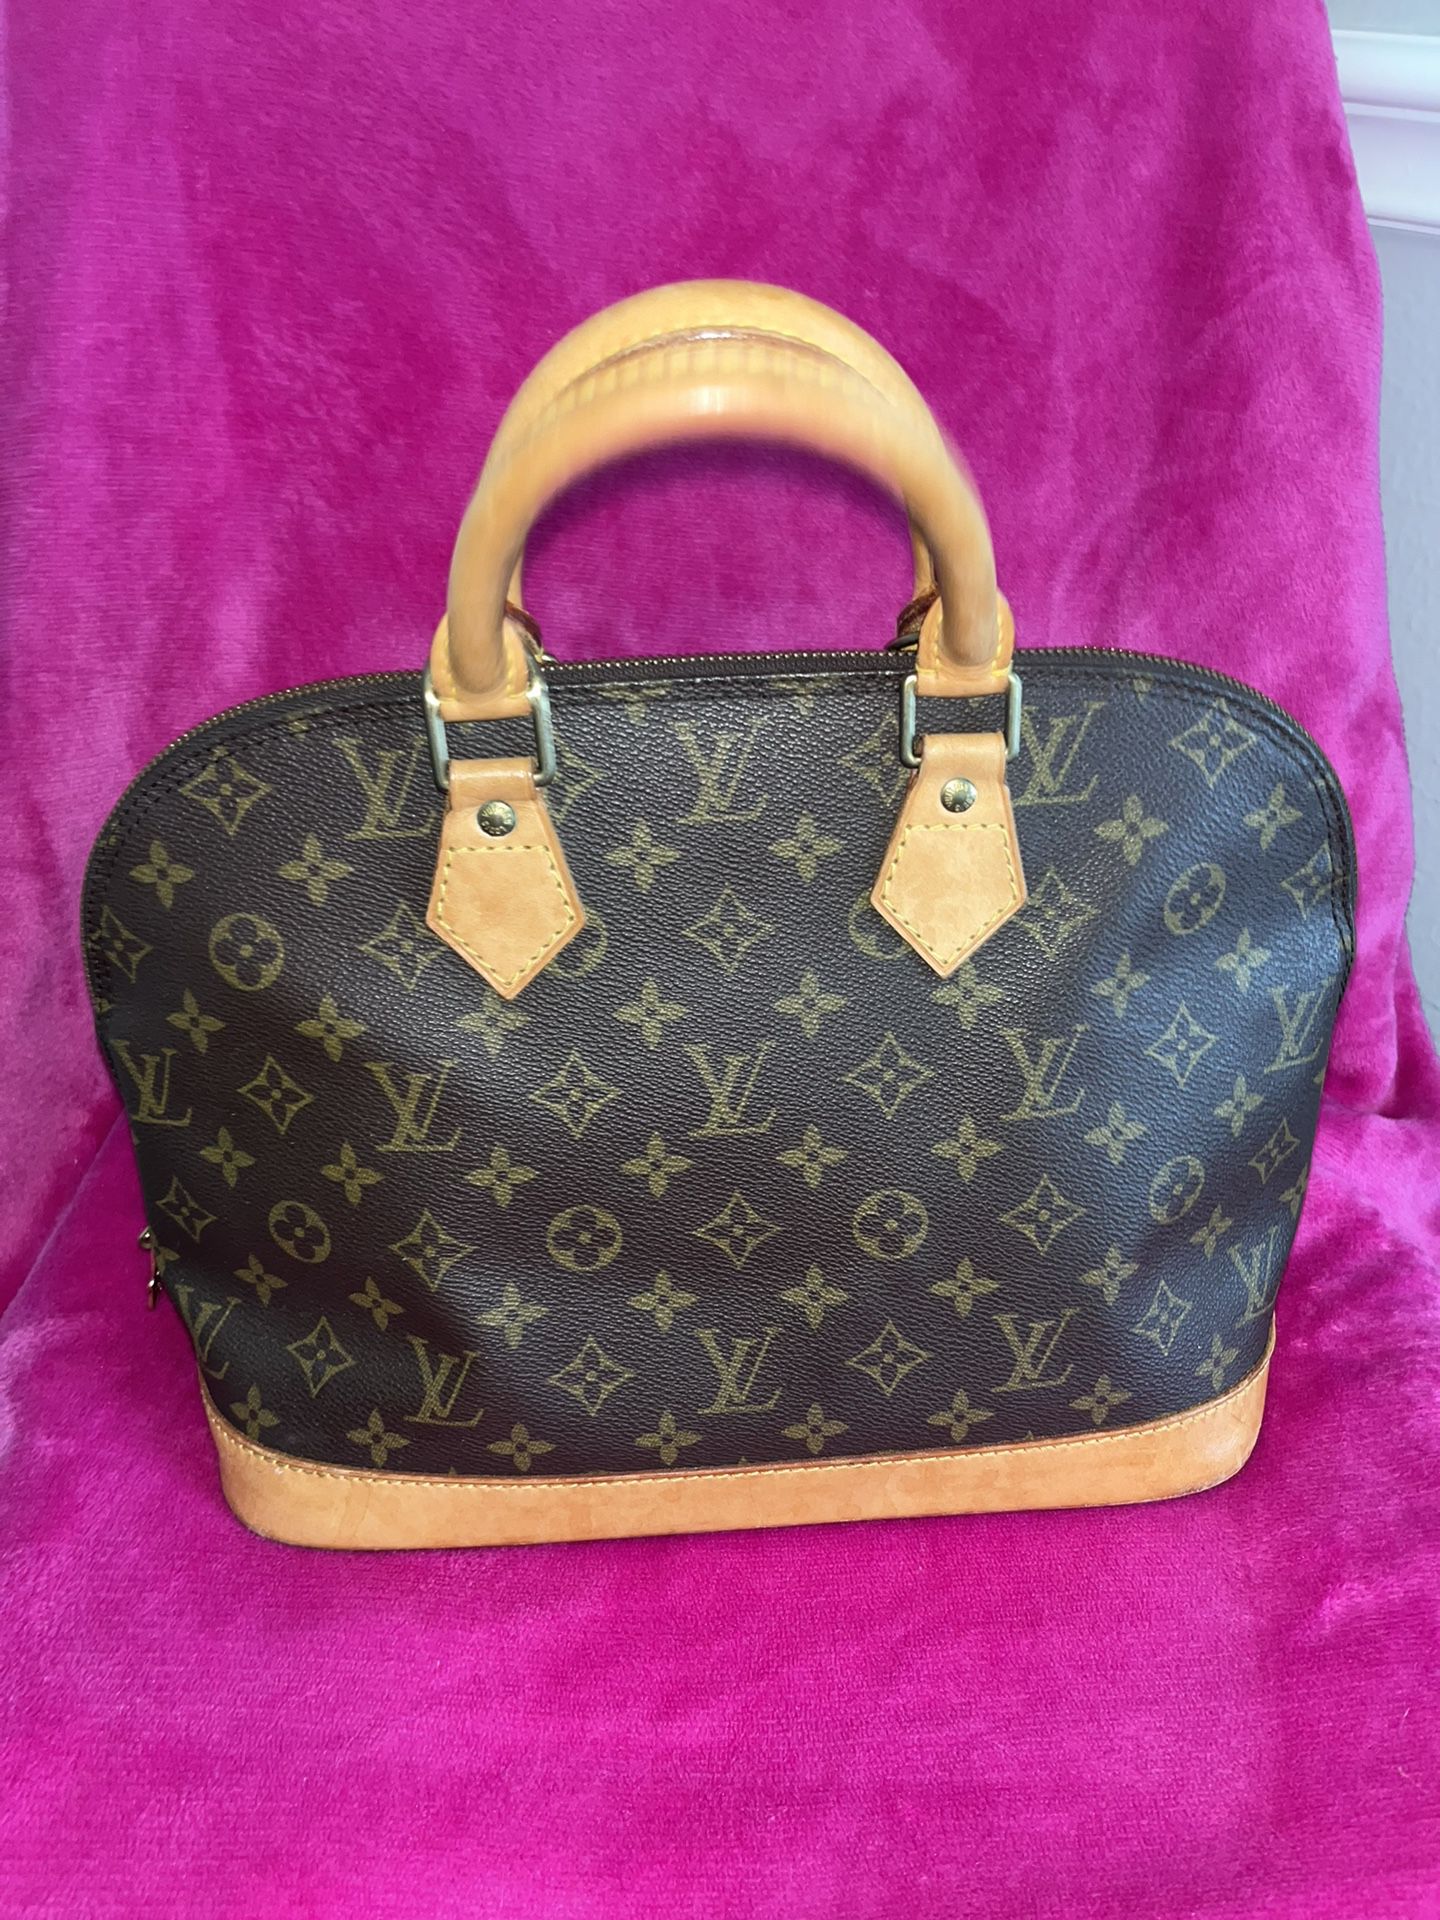 Louis Vuitton Alma PM Bag! 